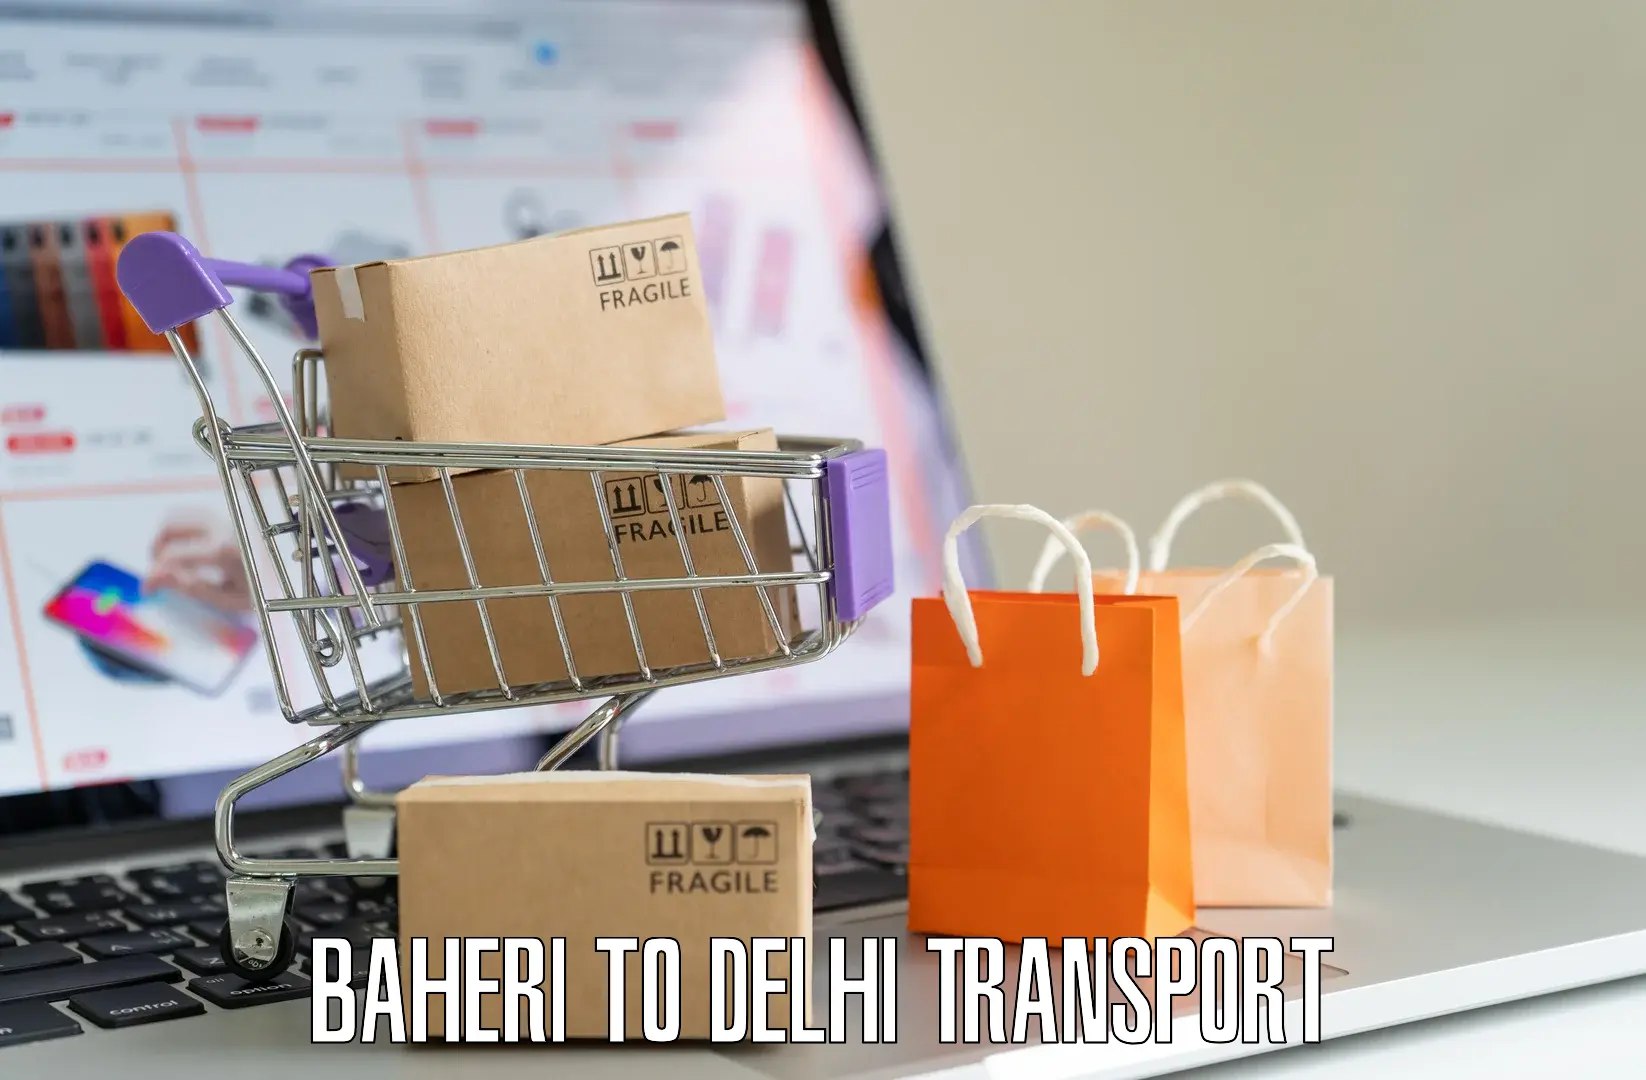 Road transport online services Baheri to East Delhi